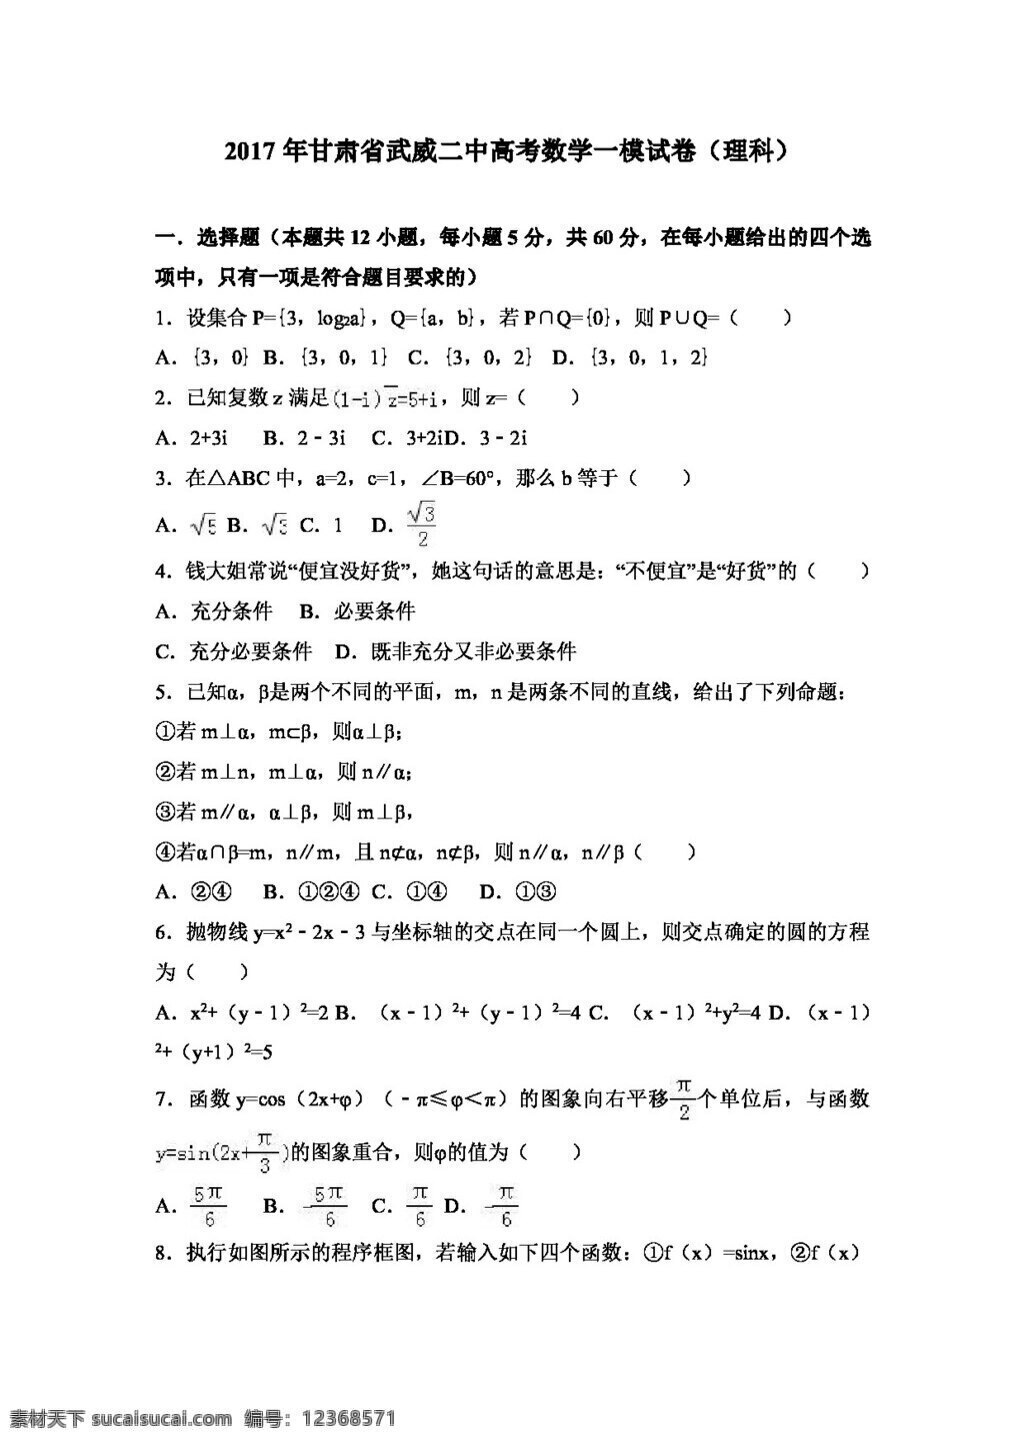 数学 人教 版 2017 年 甘肃省 武威 二中 高考 模 试卷 理科 高考专区 人教版